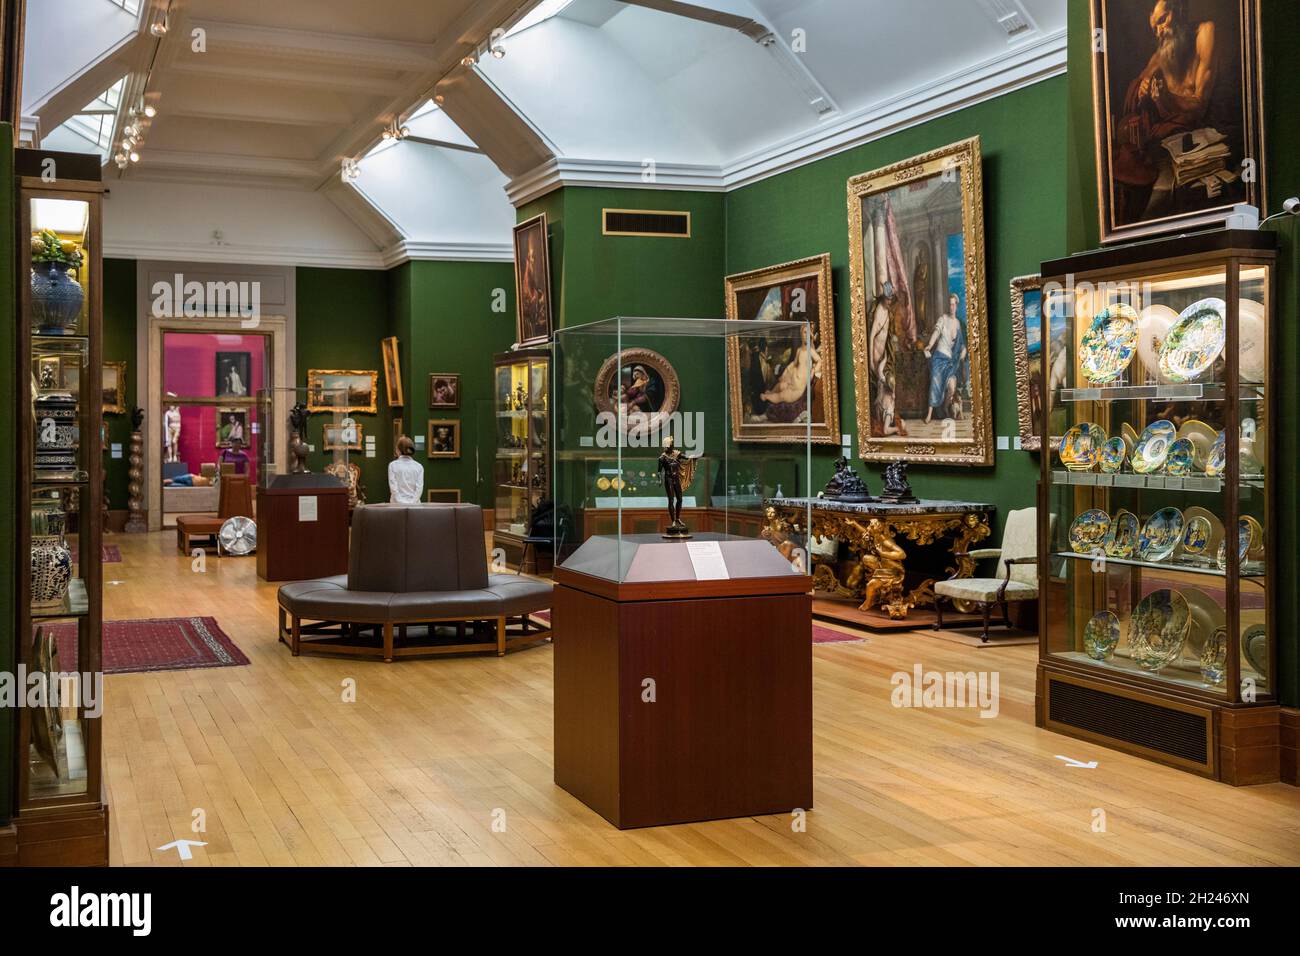 Royaume-Uni, Angleterre, Cambridgeshire, Cambridge, Trumpington Street,Musée Fitzwilliam, intérieur de la galerie d'art italien Banque D'Images